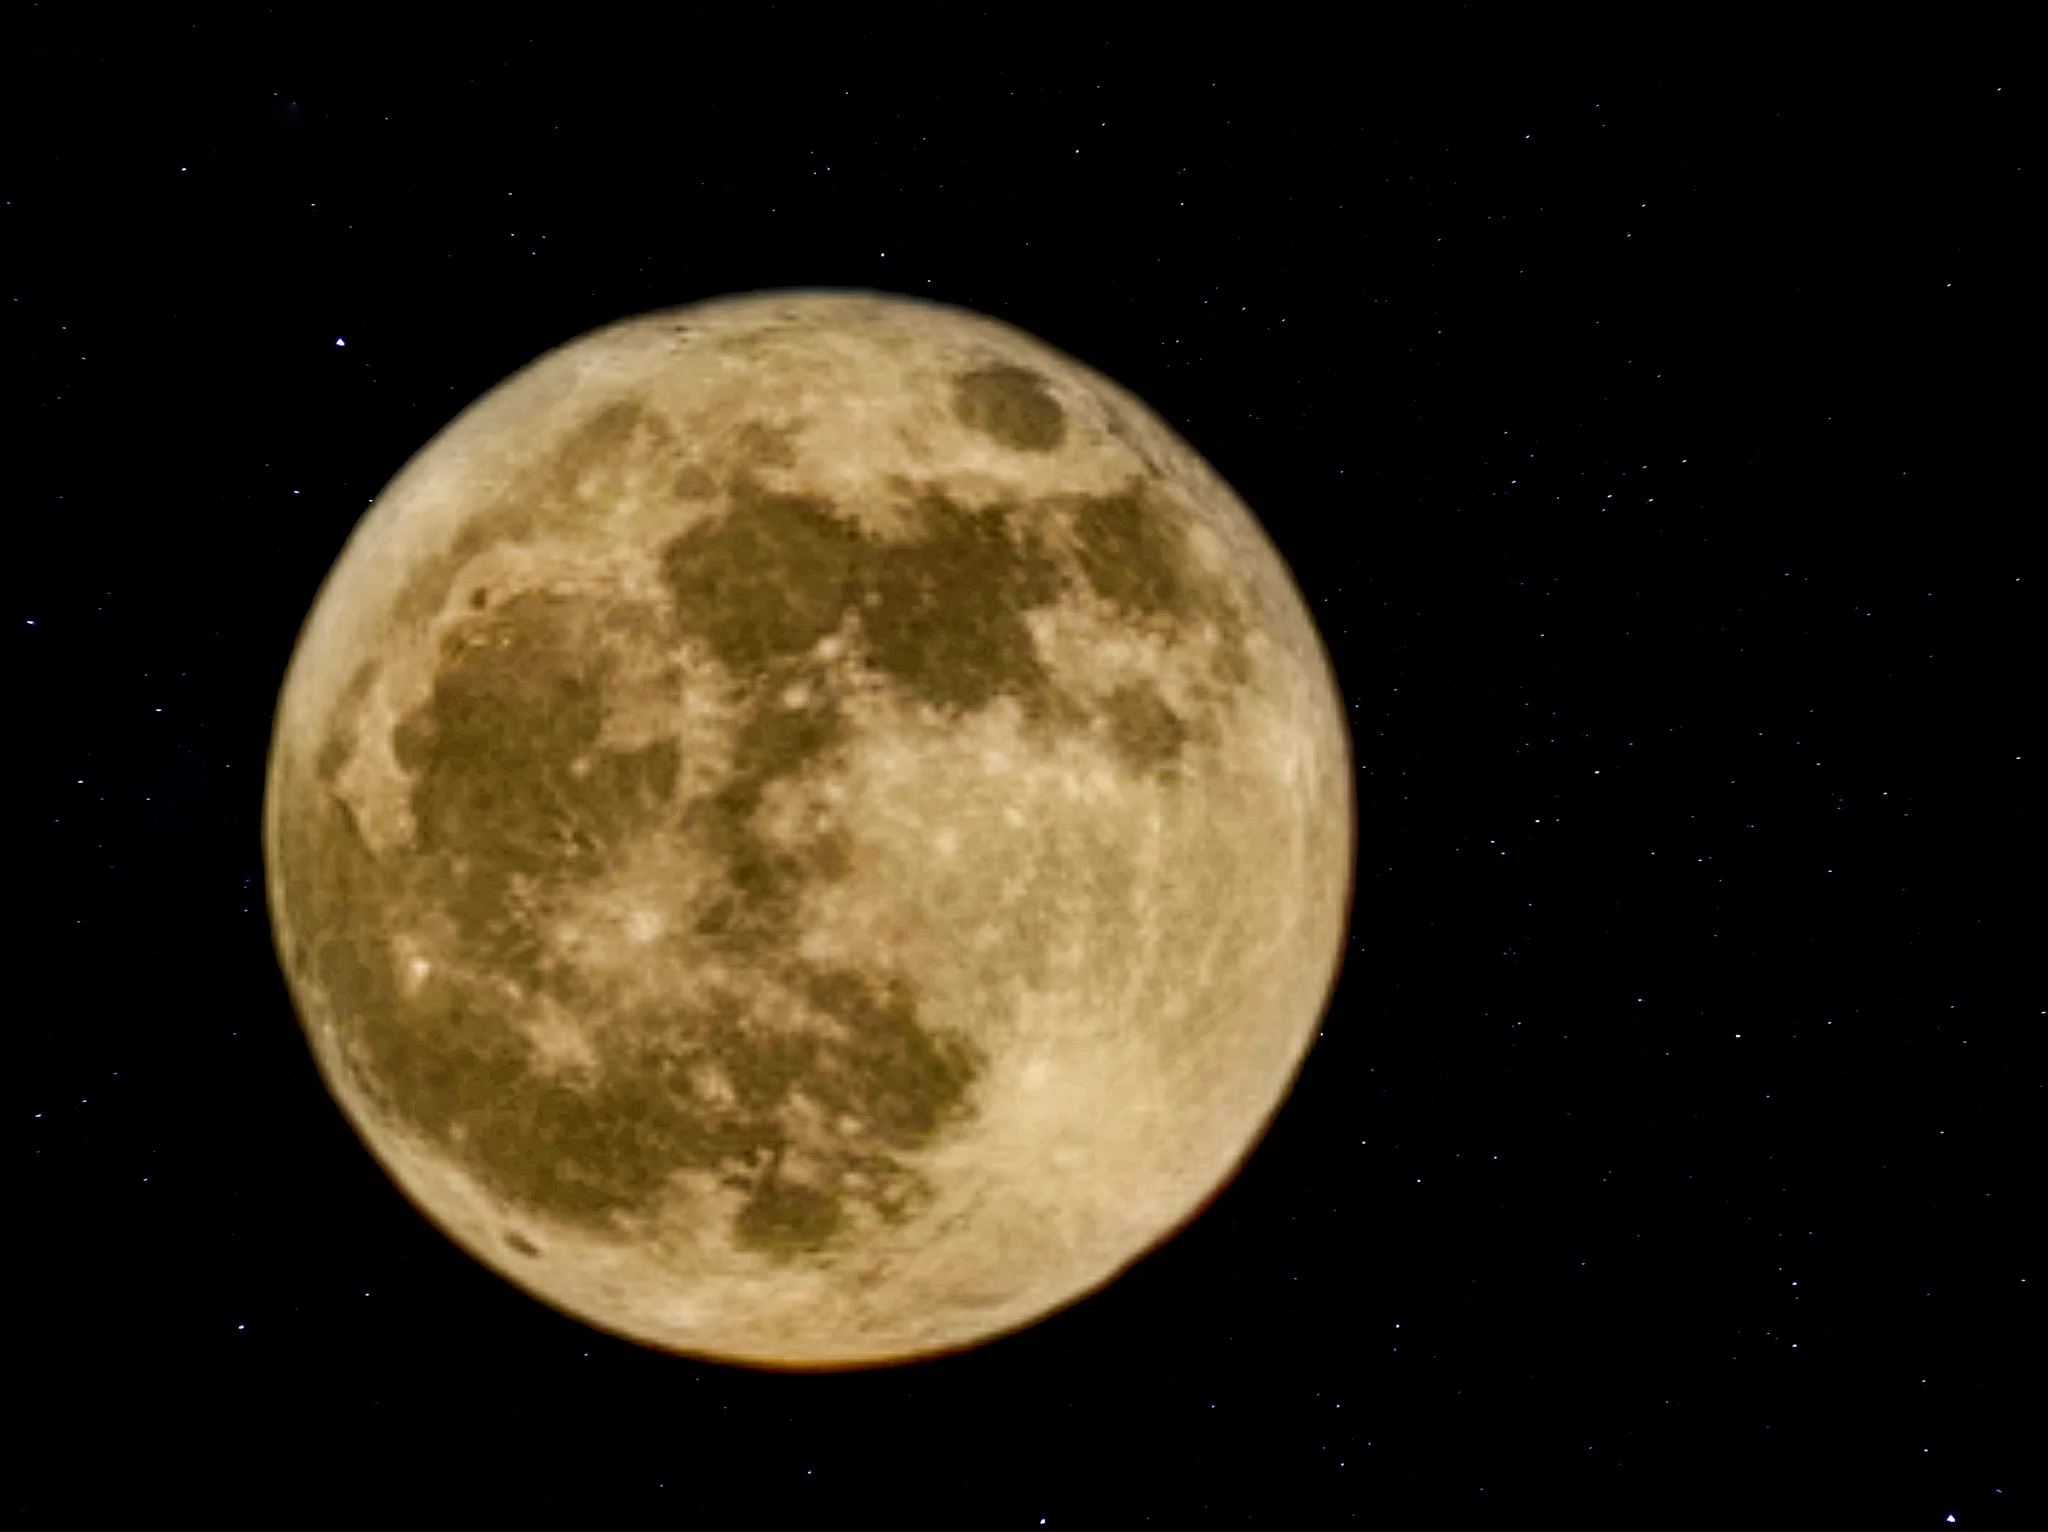 ירח מלא במרכז שמי הלילה, מוקף בכוכבים מנצנצים, התמונה לוכדת את המכתשים העתיקים של הירח בפירוט מלא חיים.